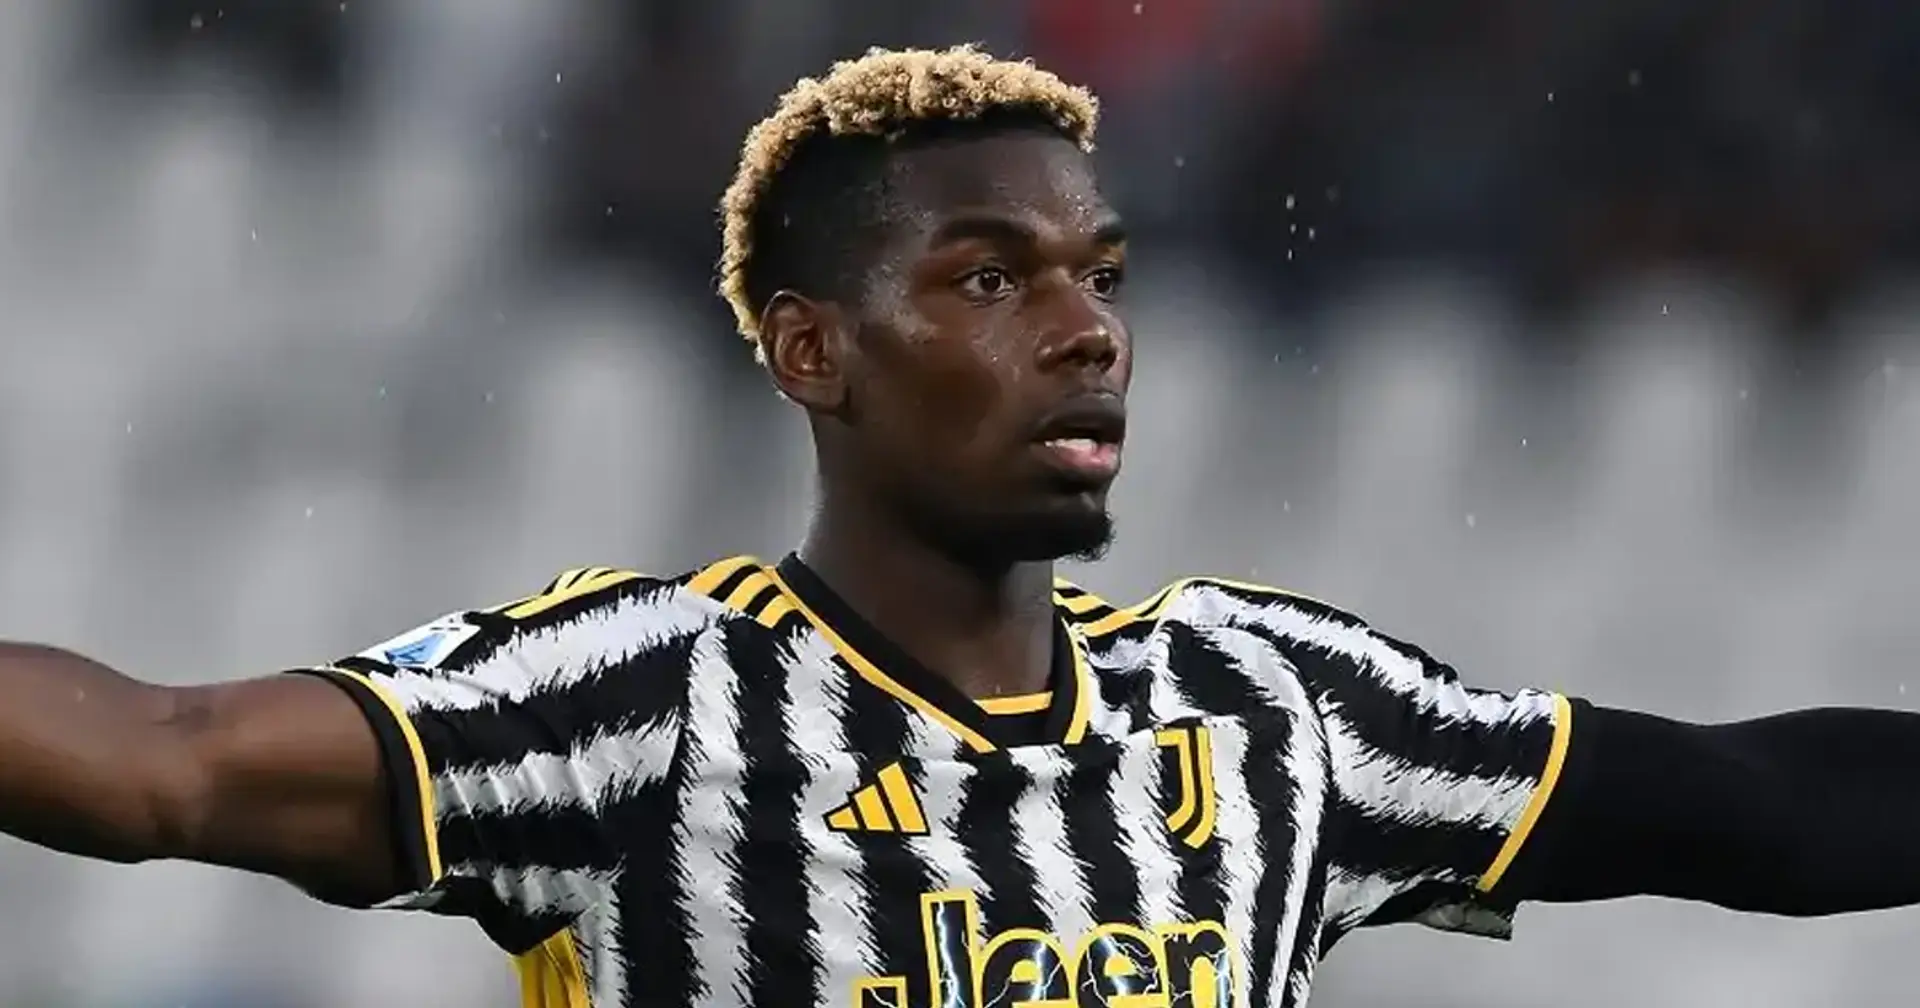 Slitta la decisione sul futuro di Pogba: le ultime novità sul processo per doping del giocatore della Juventus